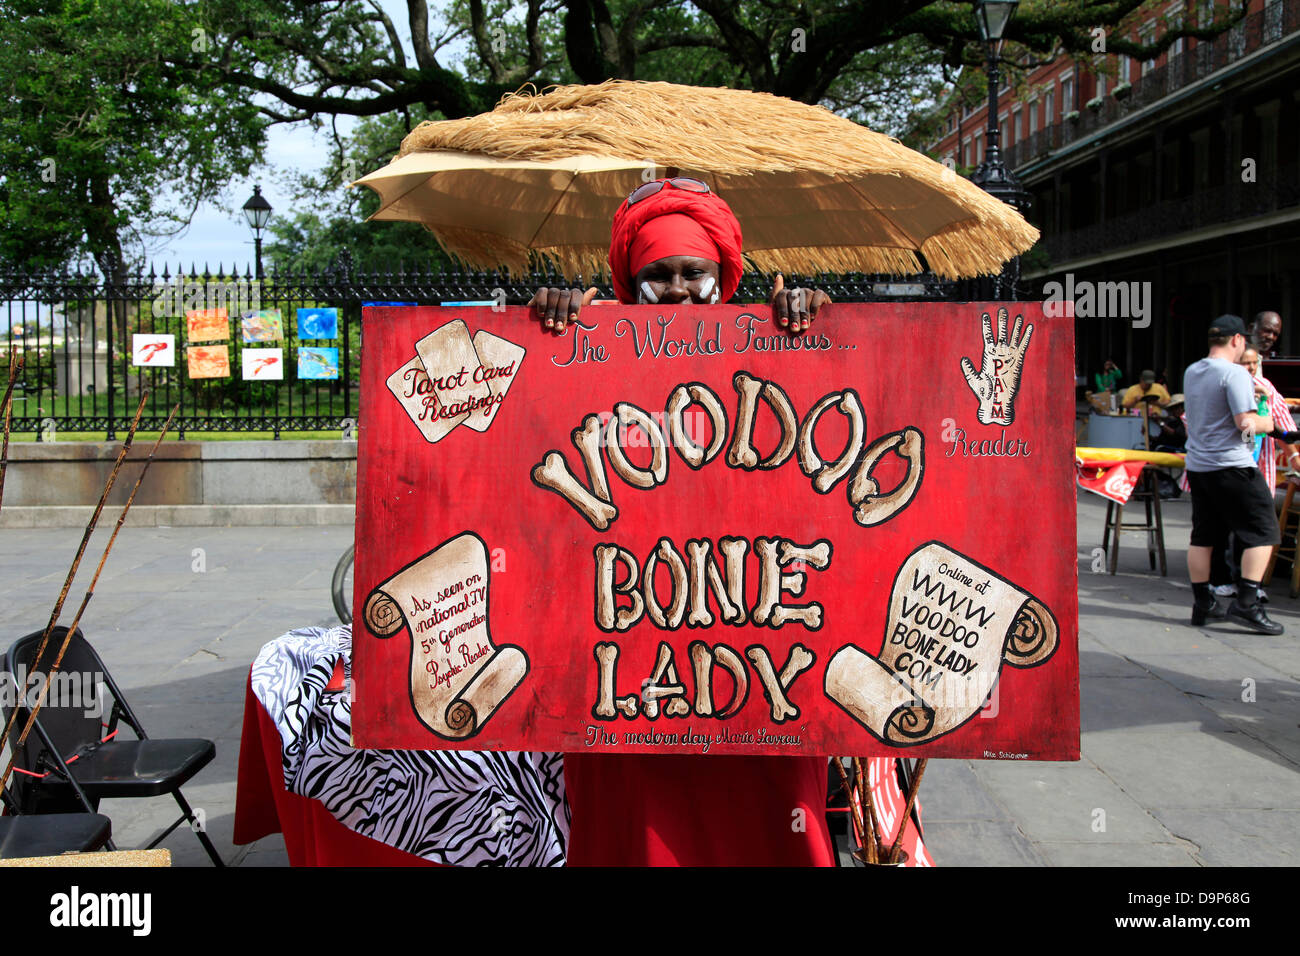 Der Voodoo Knochen Lade von New Orleans. Sie arbeitet oft in St. Peter-Straße / Jackson Square. Foto: Klaus Nowottnick Datum: 26. April 2013 Stockfoto